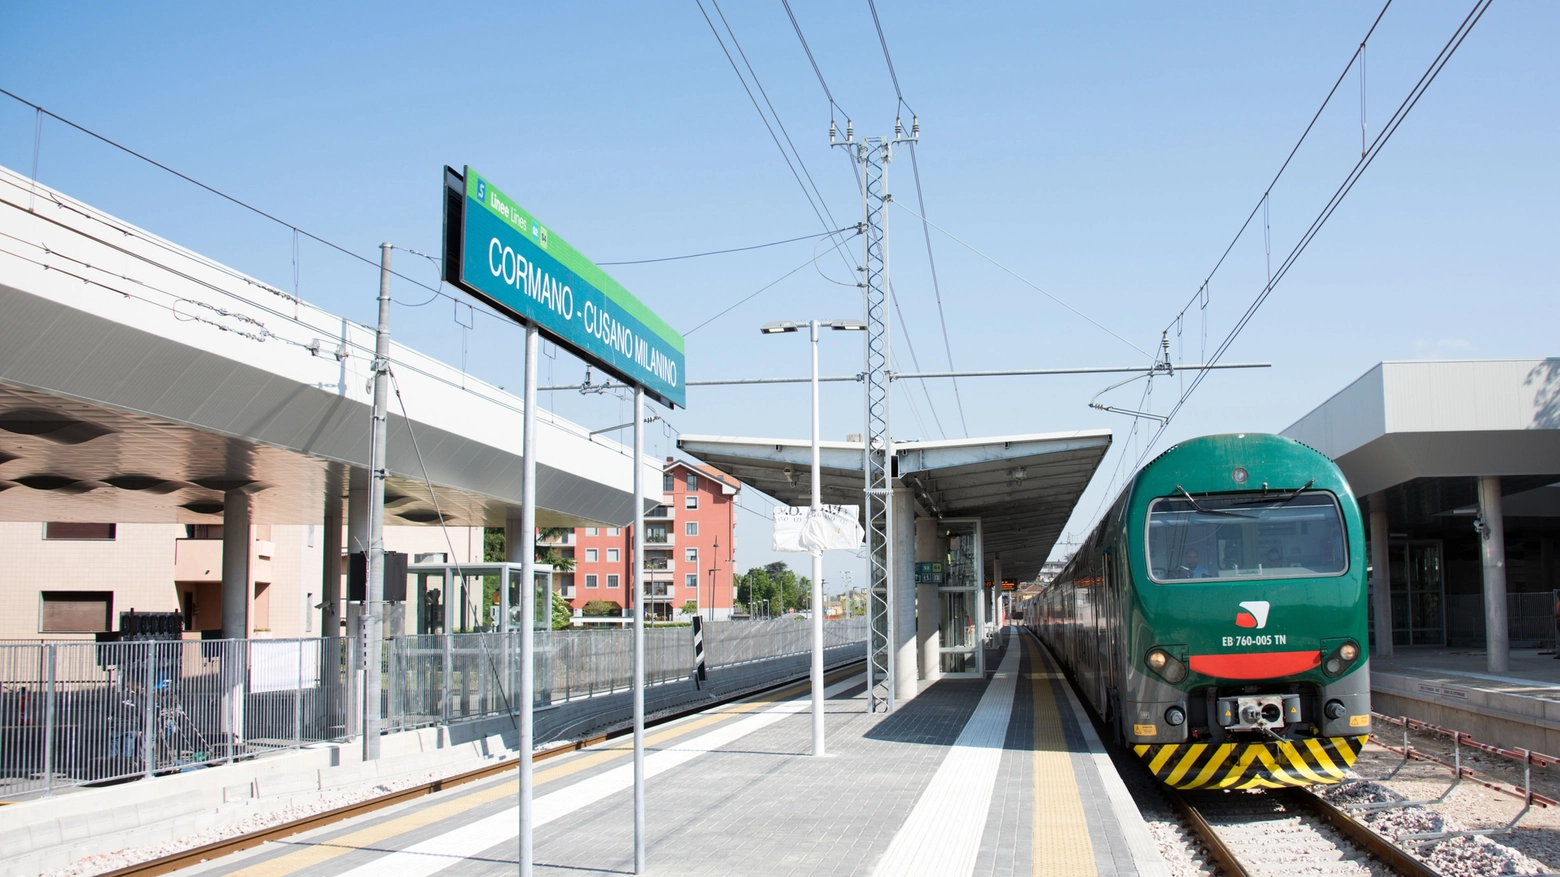 La stazione Cormano-Cusano